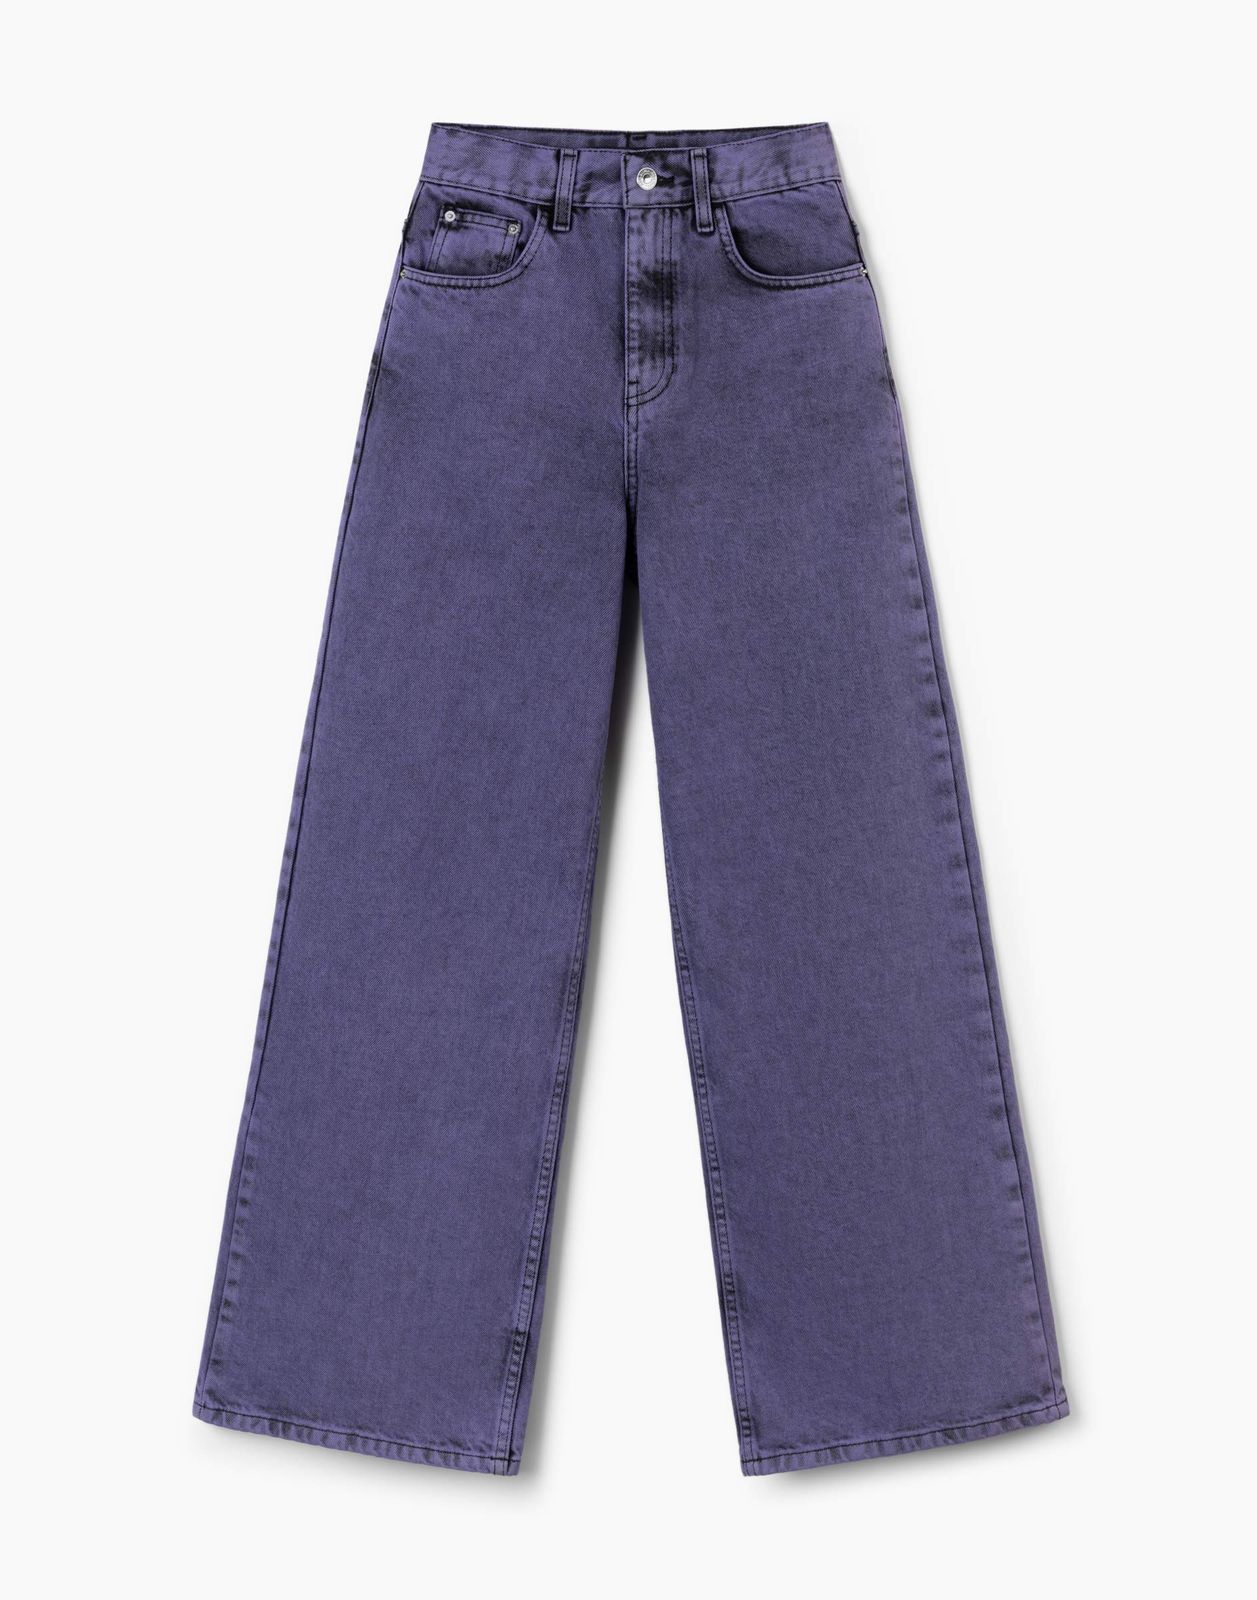 Джинсы детские Gloria Jeans GJN031150, черный/фиолетовый, 146 джинсы gloria jeans gjn031147 фиолетовый 8 10л 140